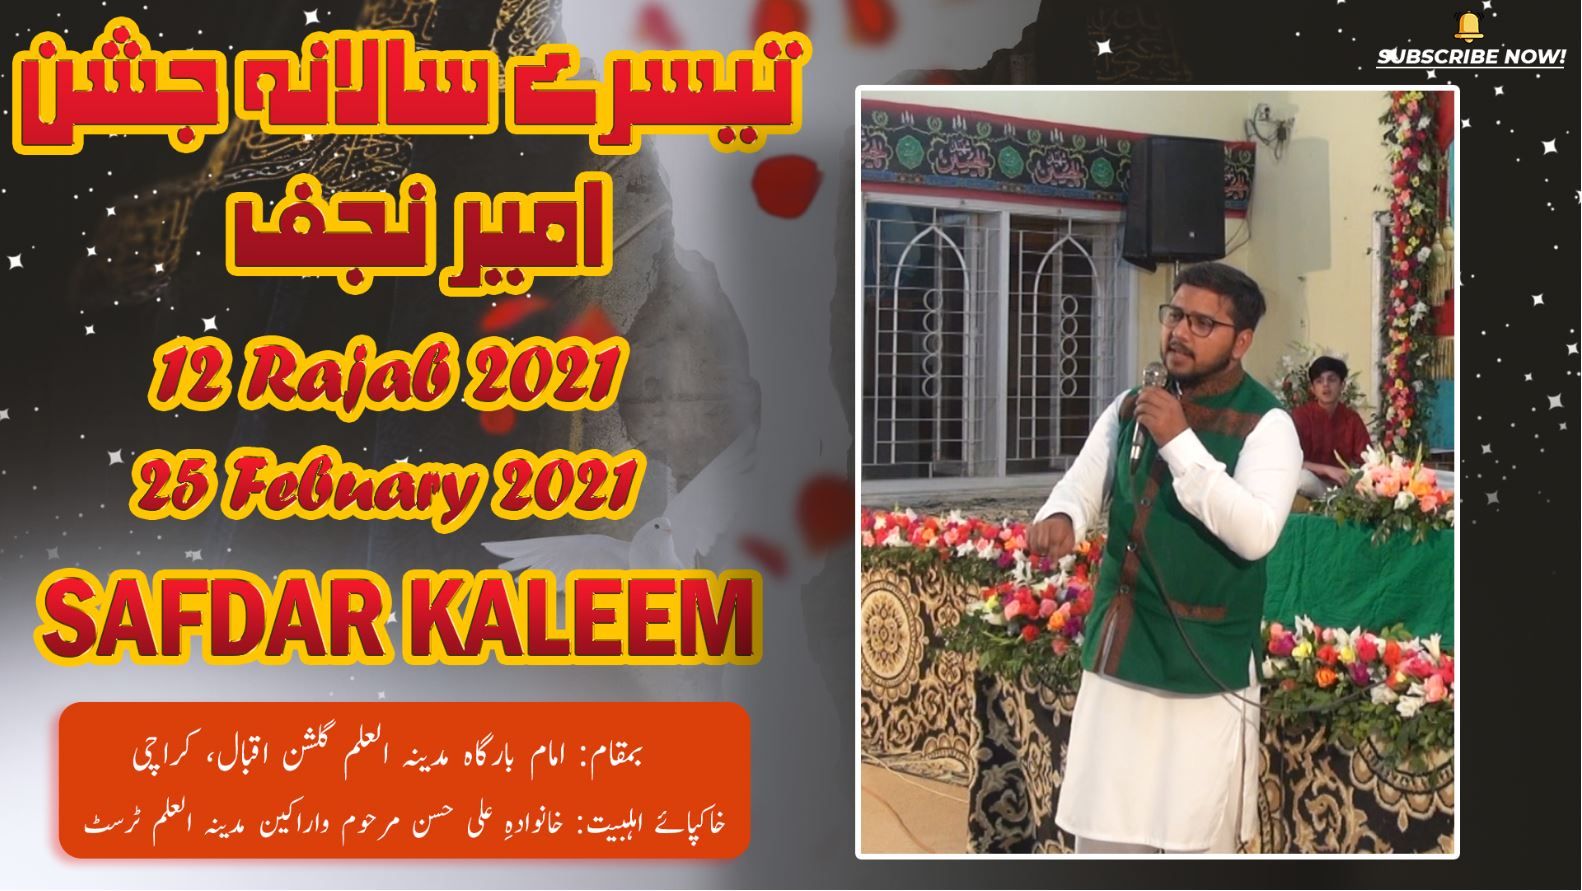 Manqabat | Safdar Kaleem | Jashan Ameer-e-Najaf - 12 Rajab 2021 - Imam Bargah Madina Tul Ilm Karachi